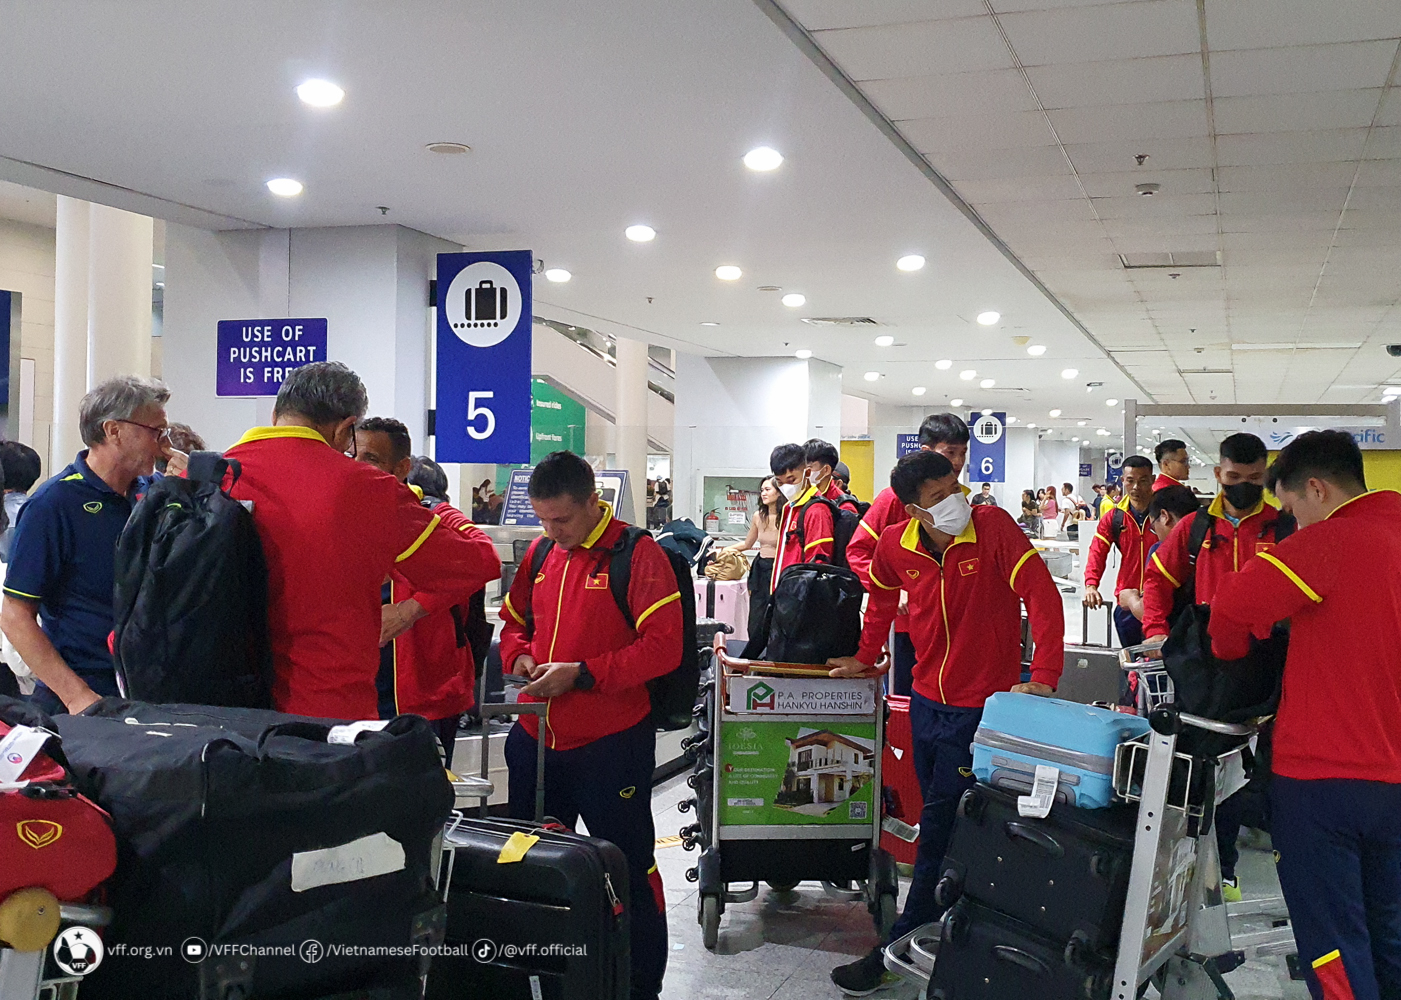 Đội tuyển Việt Nam được chào đón nồng nhiệt tại Philippines, xỏ giày tập ngay trong tối - Ảnh 4.